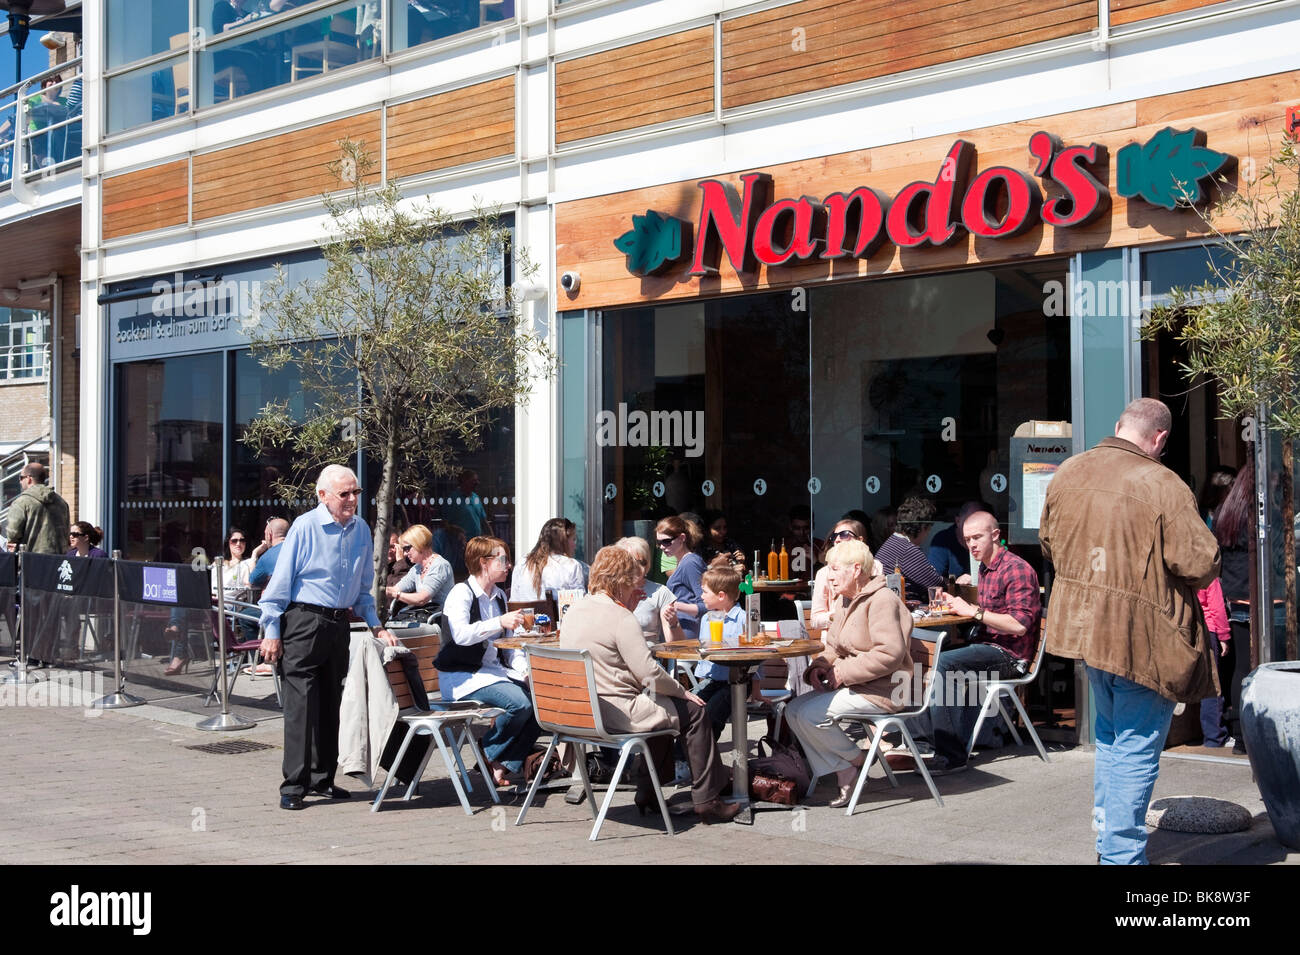 Les personnes mangeant à l'extérieur à Nando's Cafe, la baie de Cardiff, Pays de Galles, Royaume-Uni. Banque D'Images